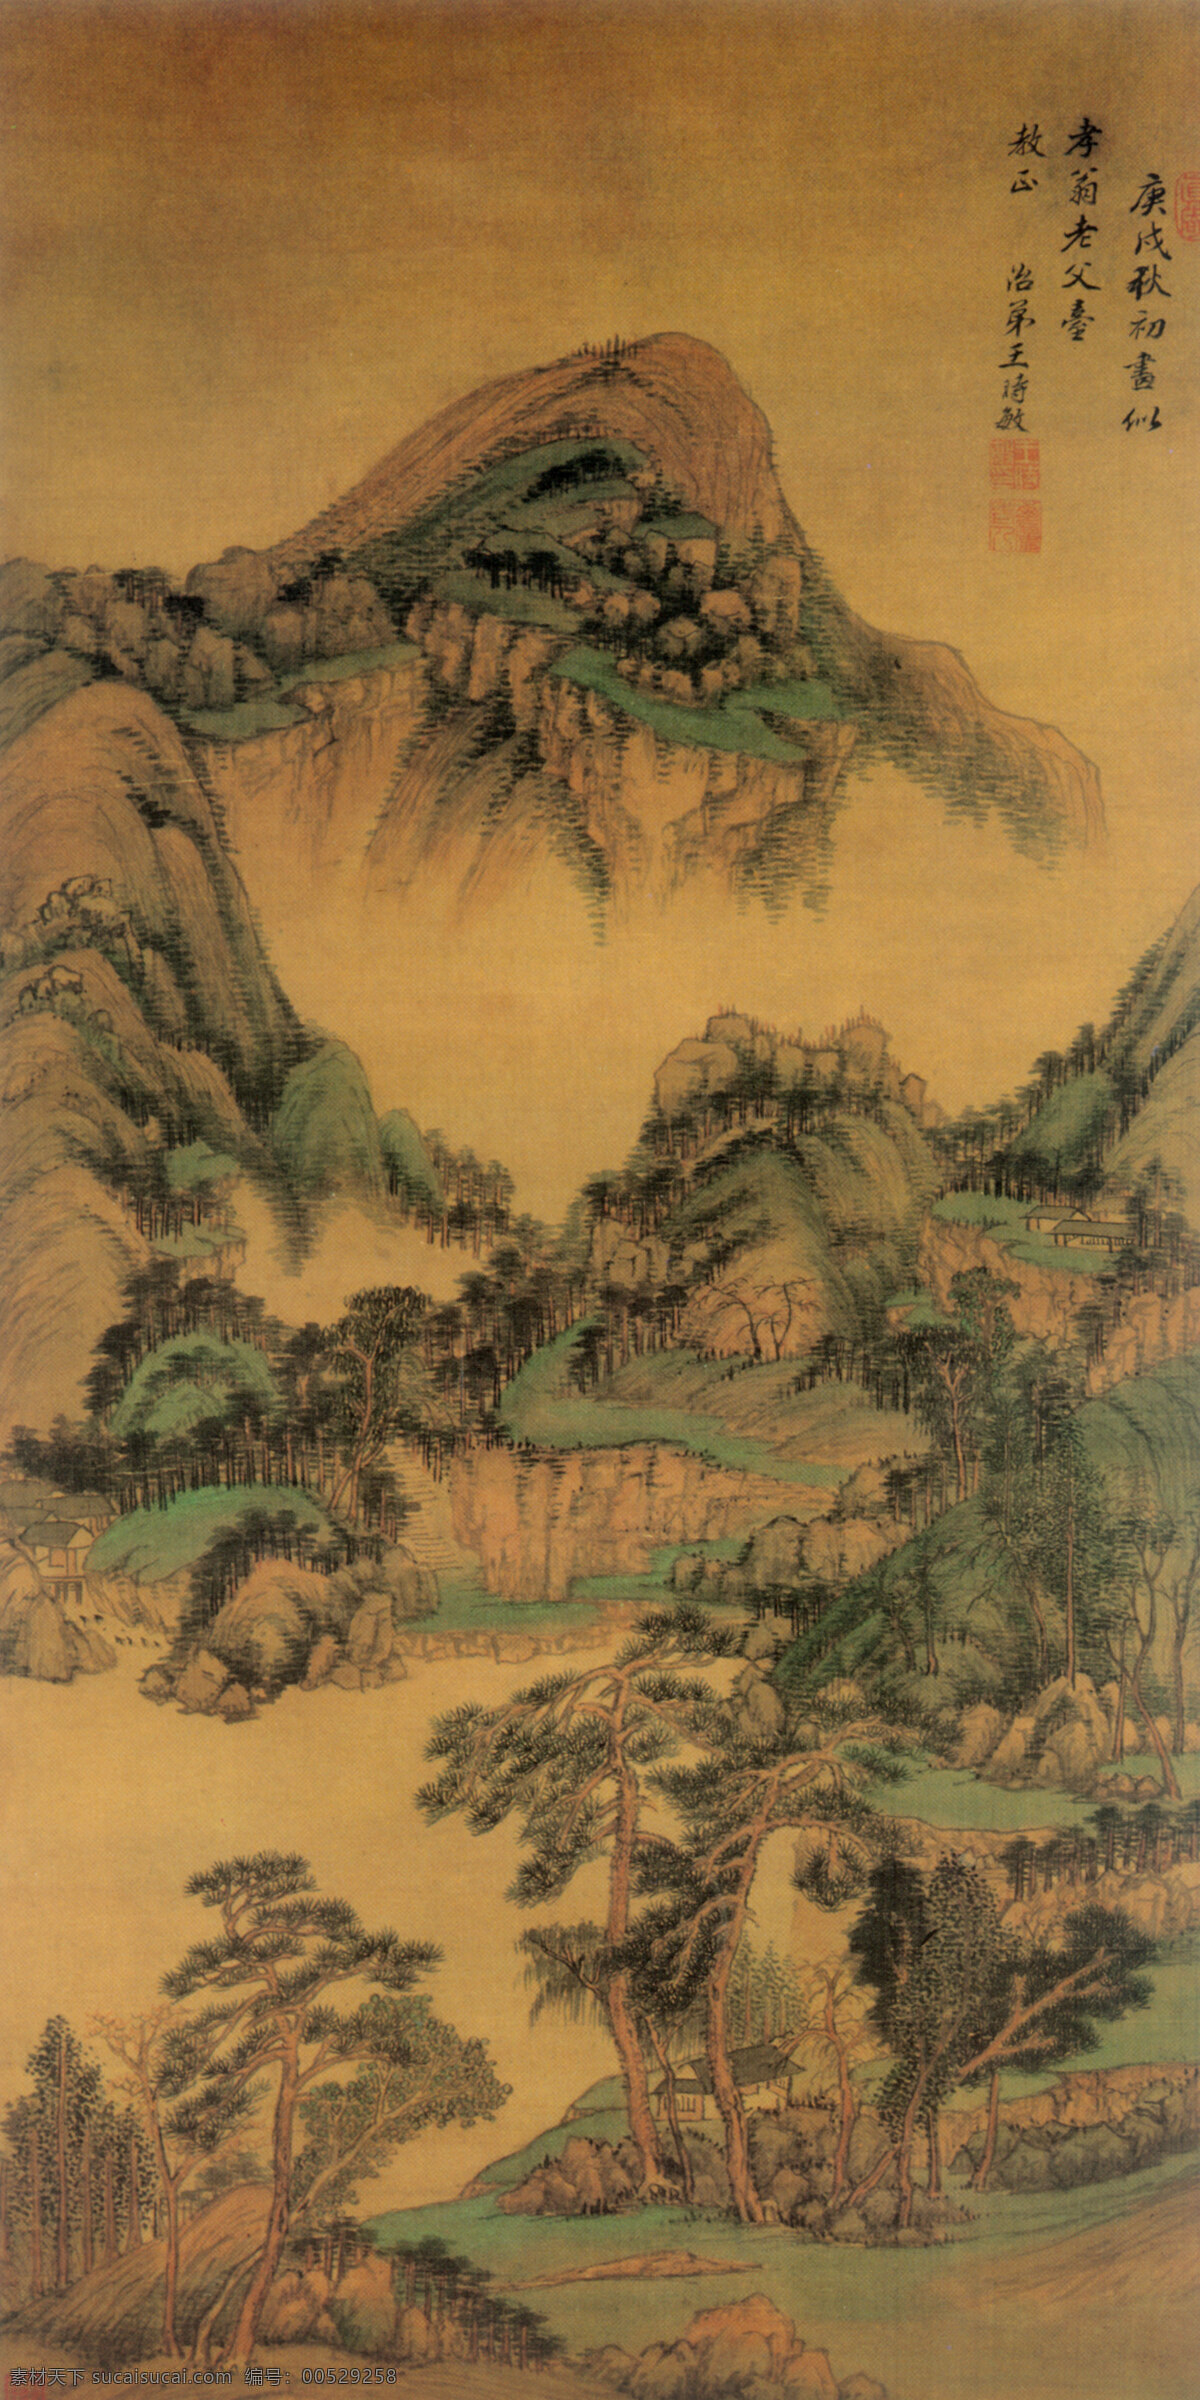 中国 传世 名画 397 古图 古画 传统 水墨 山水画 艺术 文化艺术 传统文化 设计图库